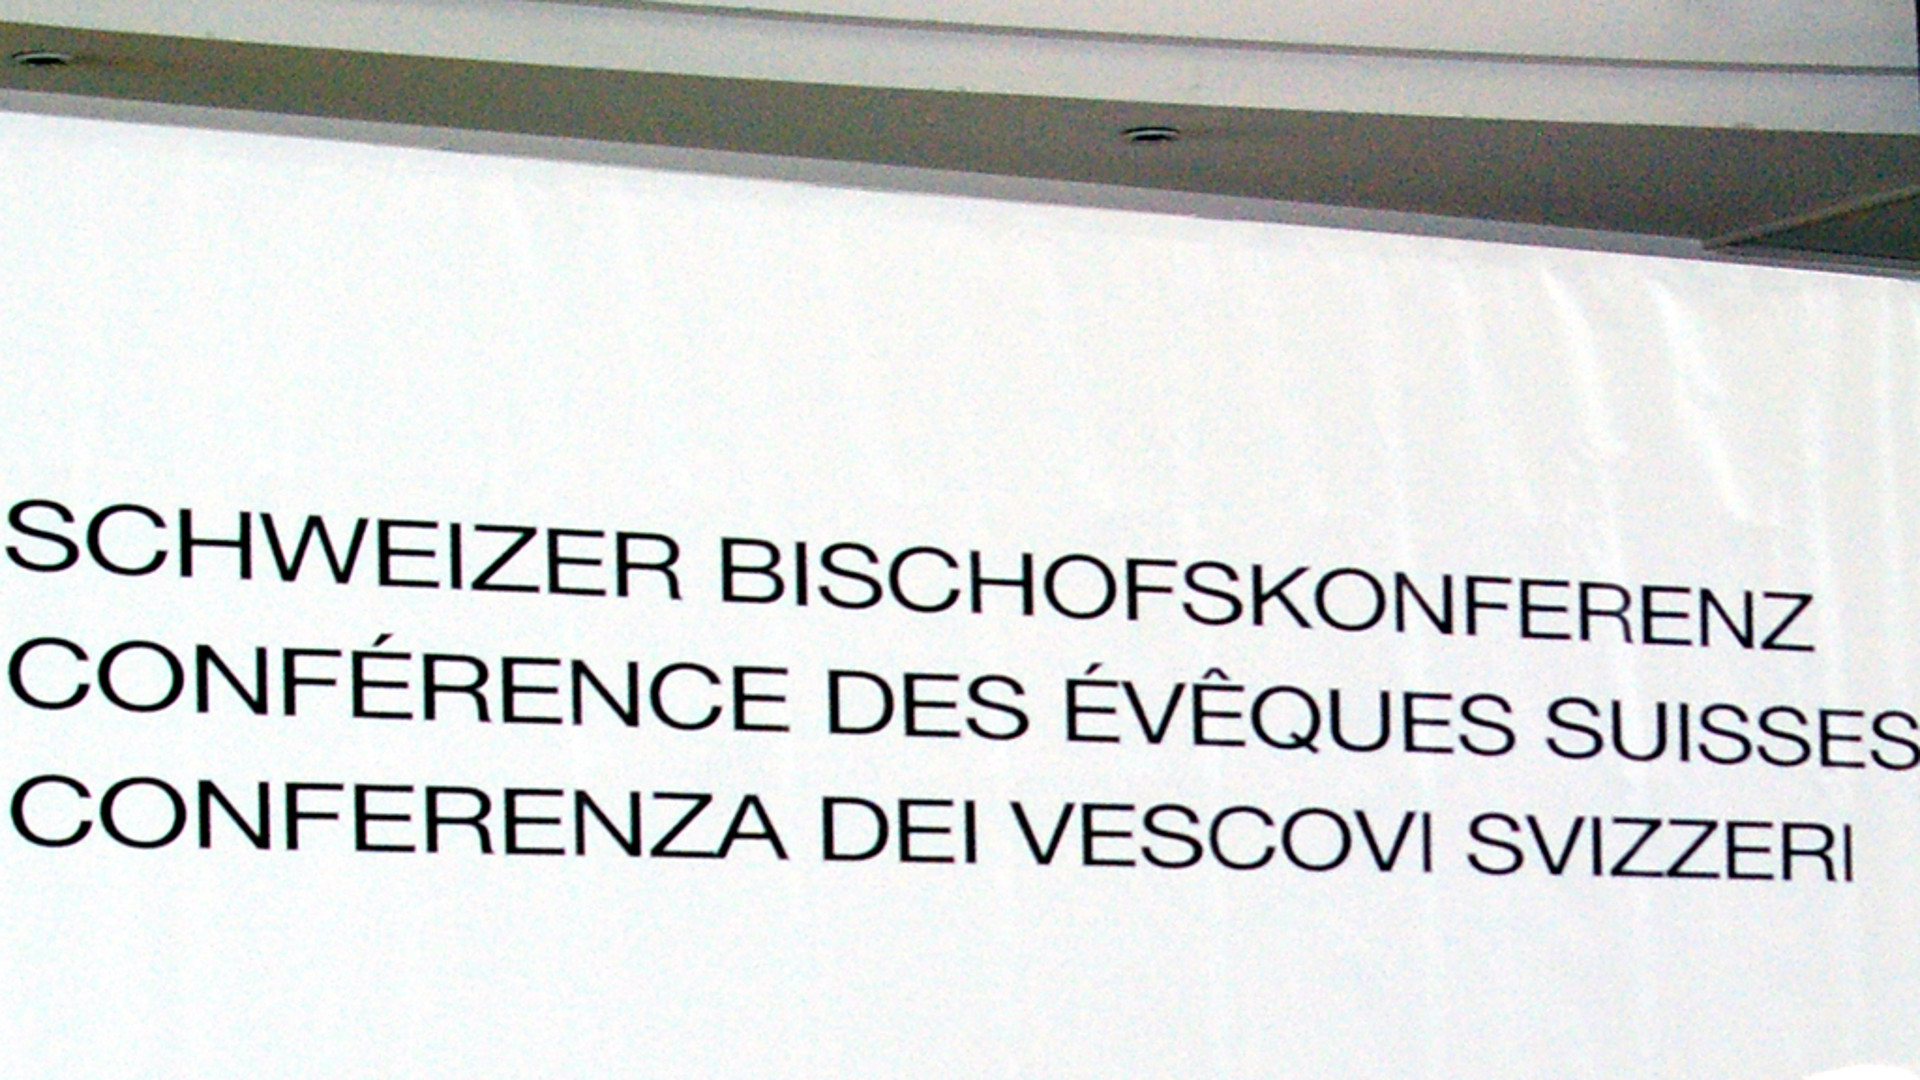 Banderole der Schweizer Bischofskonferenz